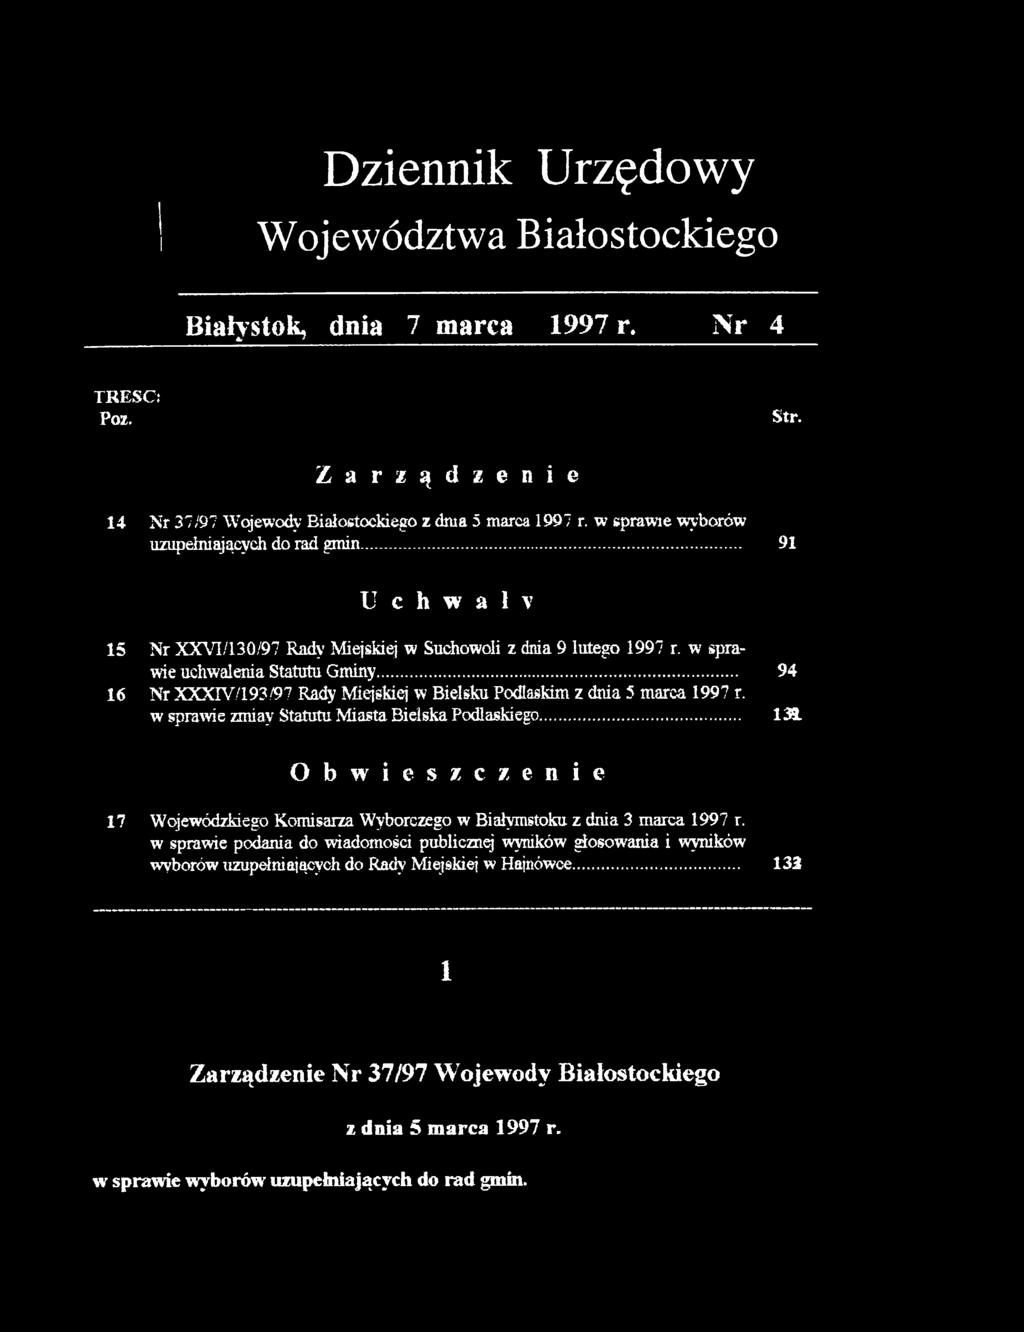 .. 94 16 Nr XXXrV7193/97 Rady Miejskiej w Bielsku Podlaskim z dnia 5 marca 1997 r. w sprawie zmiay Statutu Miasta Bielska Podlaskiego.